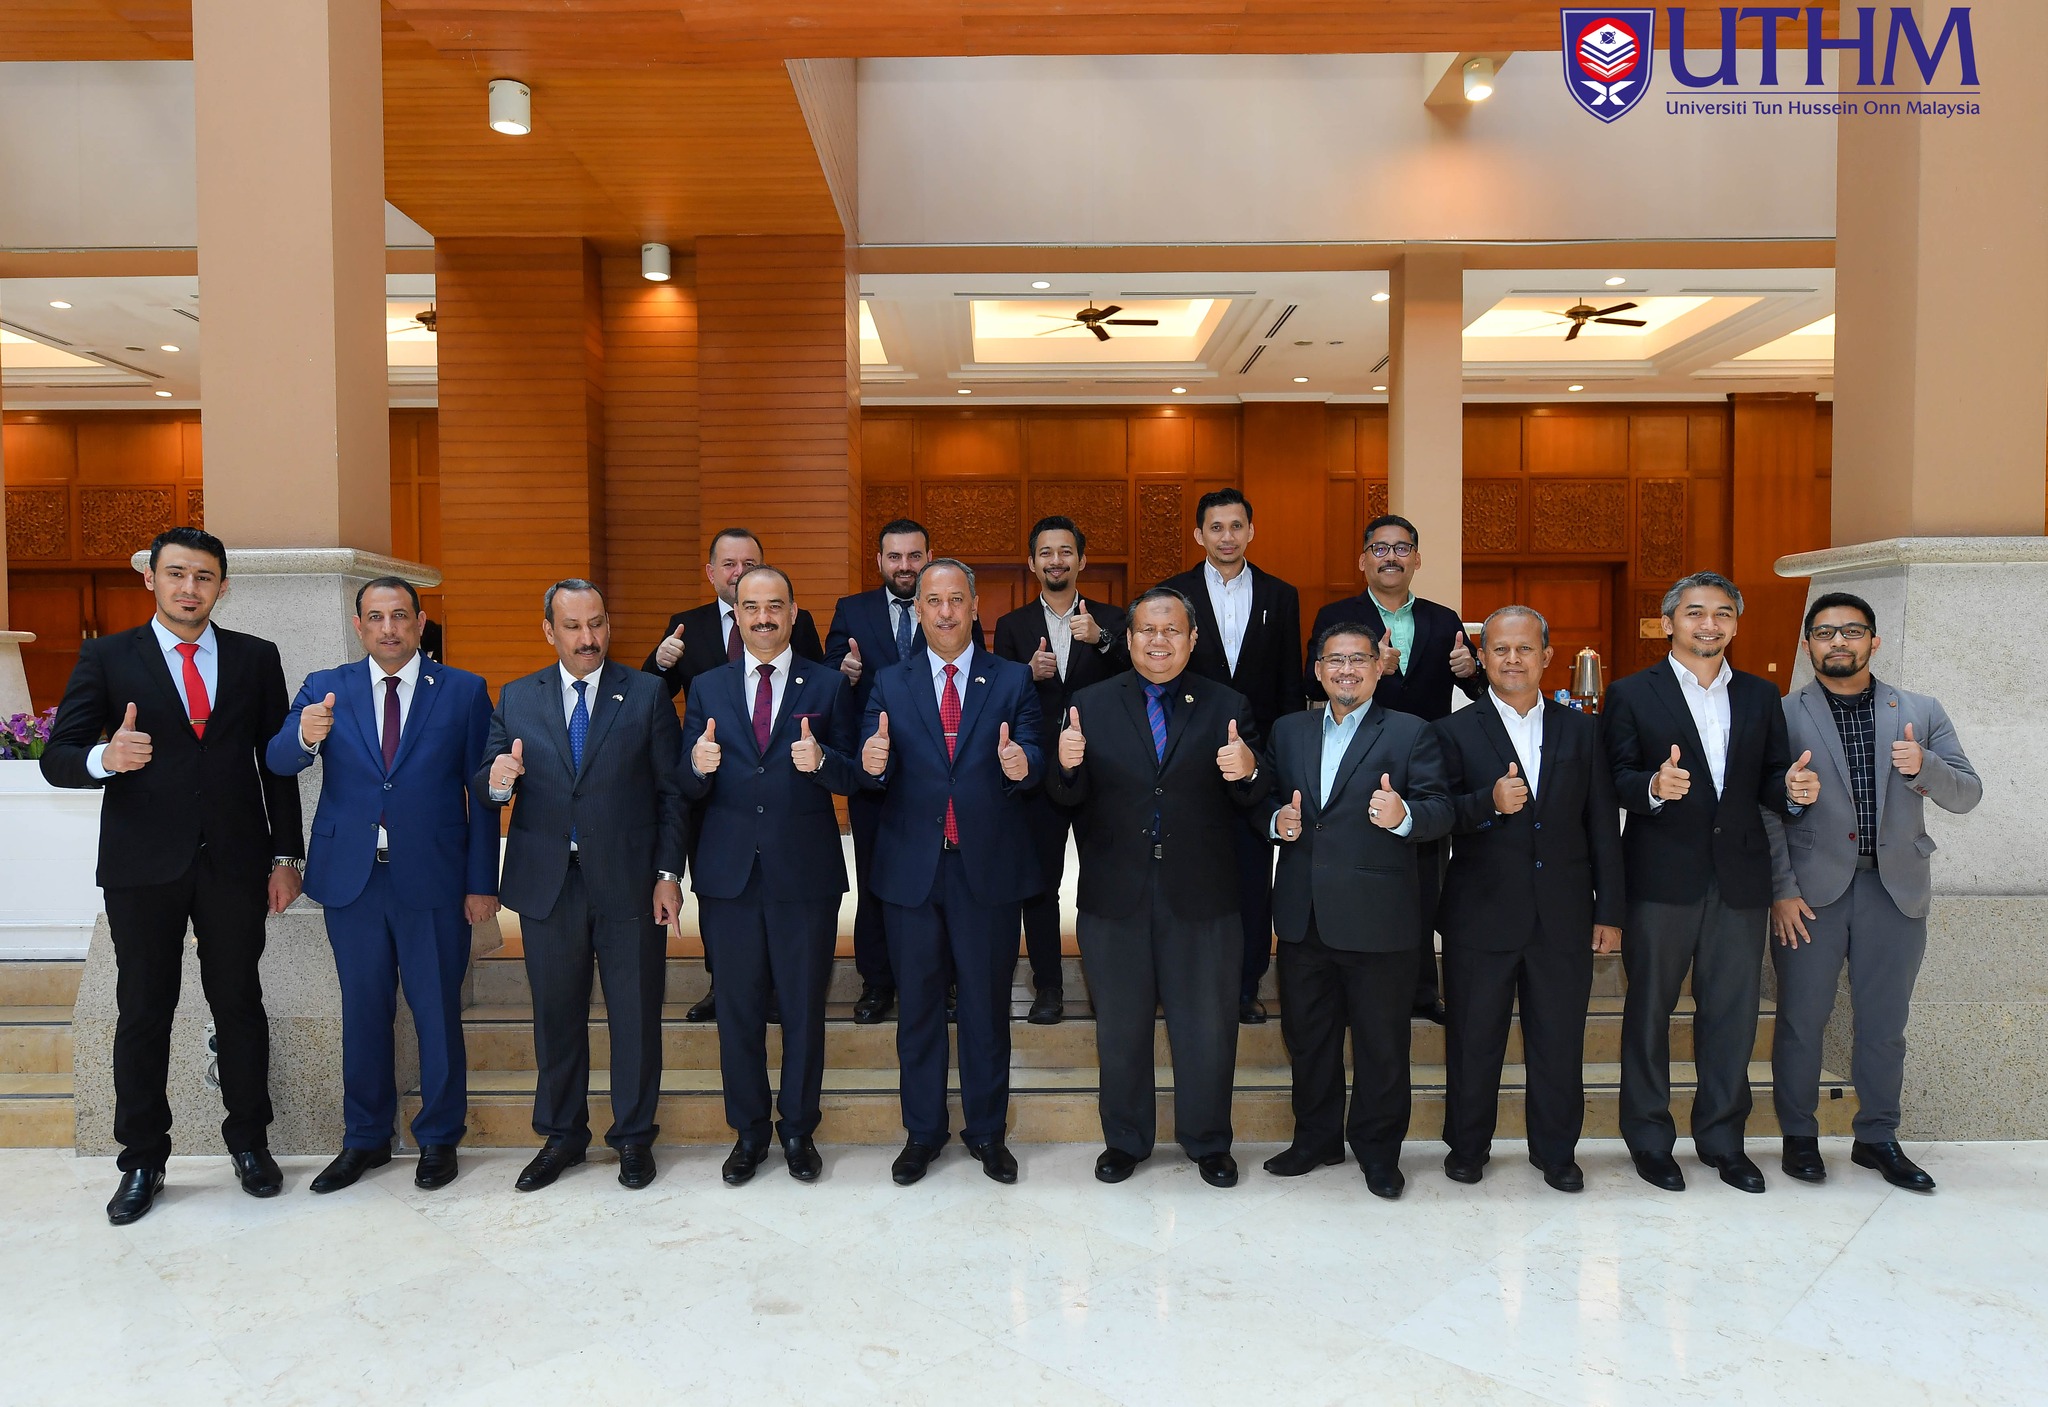 UTHM & University of Anbar, Iraq Collaboration Meeting at Royale Chulan Kuala Lumpur